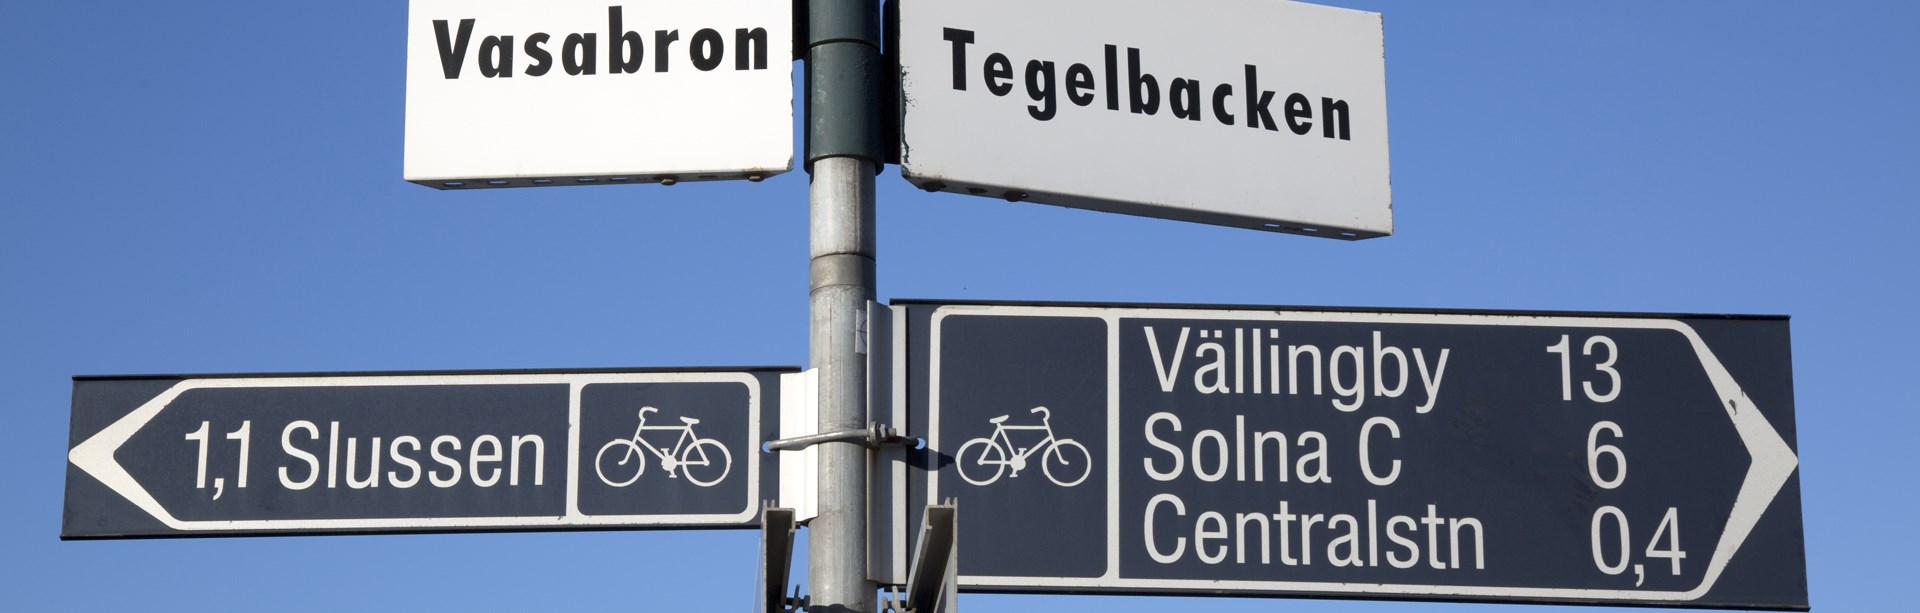 M Sverige: Cyklar och bilar måste samsas i trafiken